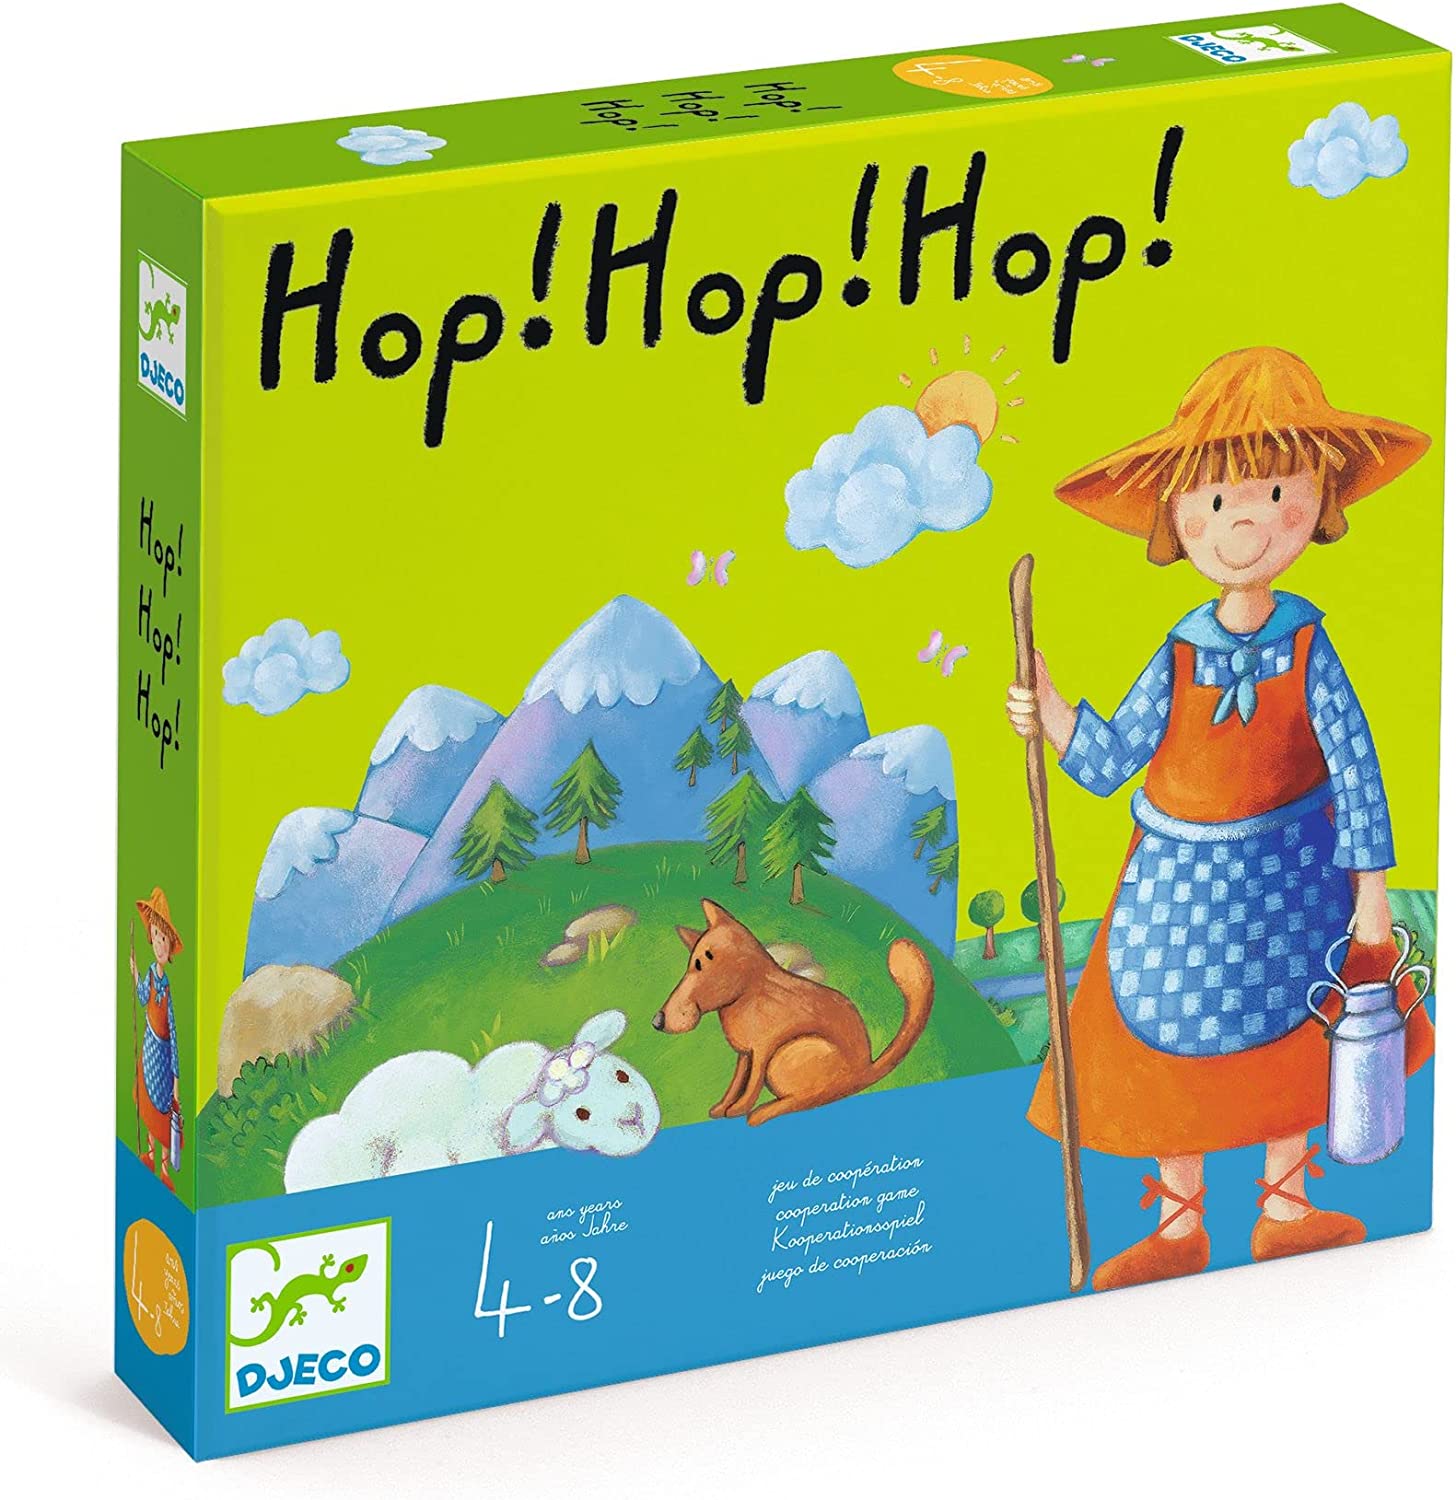 Hop!Hop!Hop! Djeco